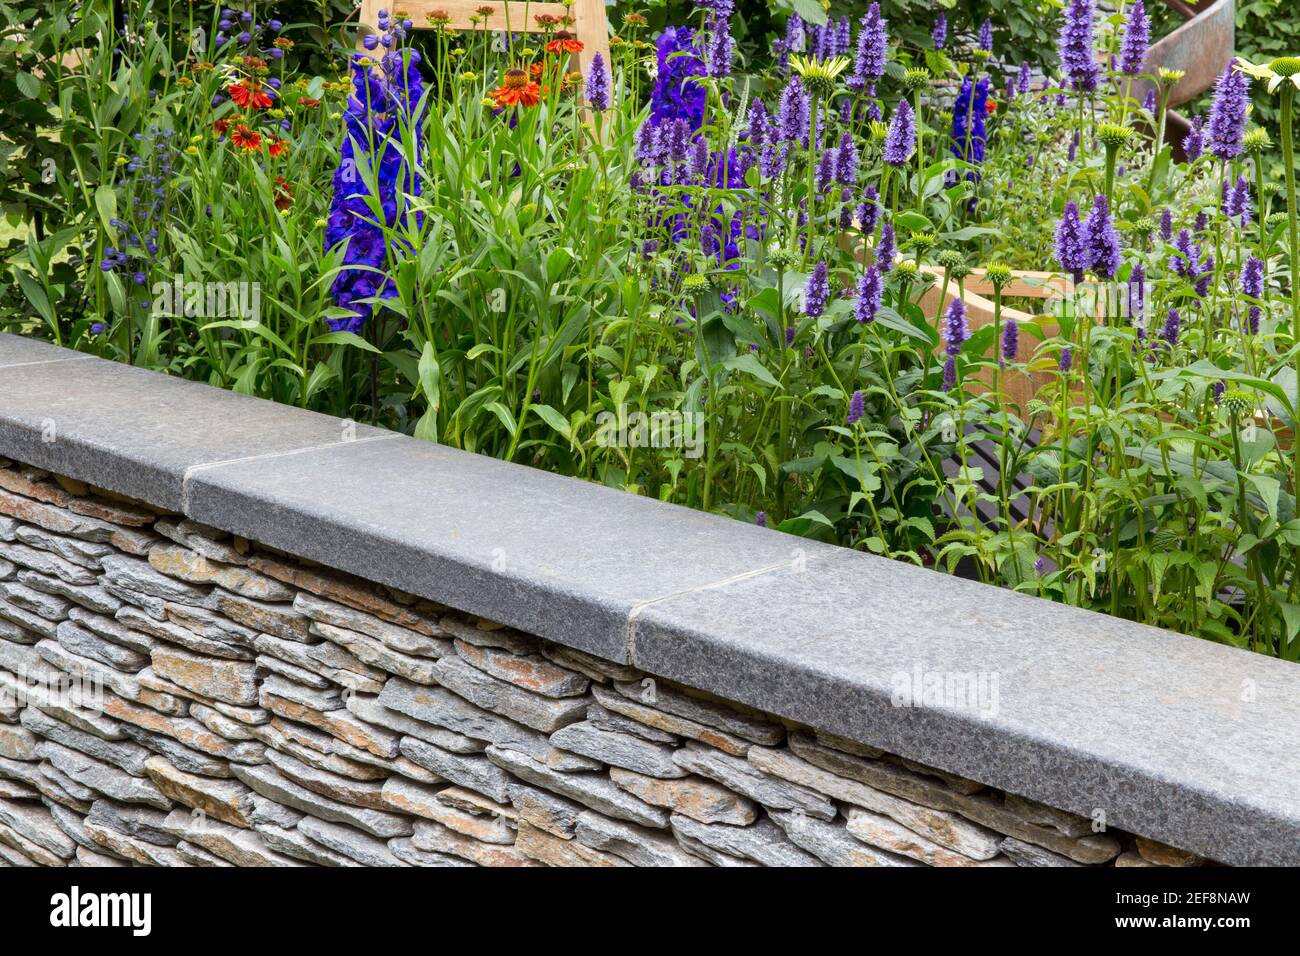 Cottage anglais jardin de campagne avec mur de pierre sec et lit de fleur bordure de jardin croissance des fleurs d'Agastache à l'été Londres Royaume-Uni Angleterre Banque D'Images